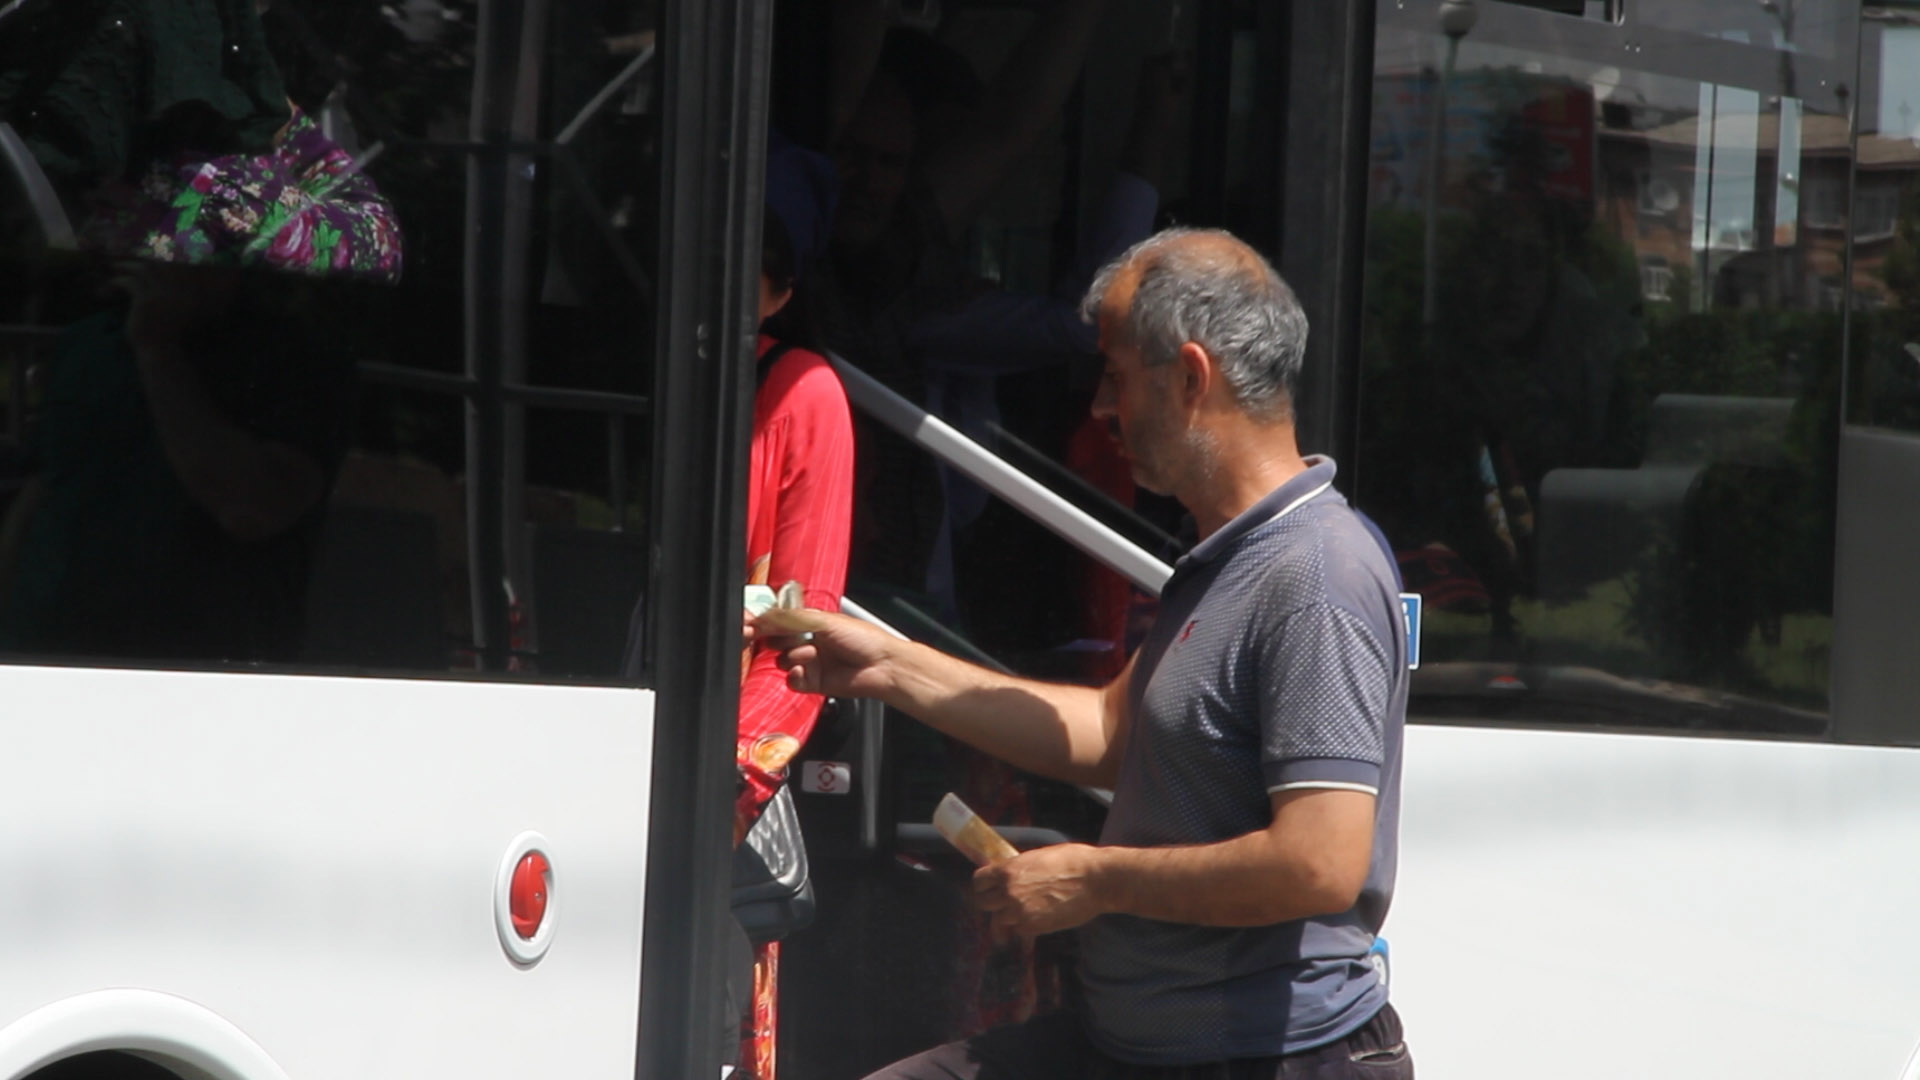 В Душанбе пытаются запретить оплату наличными в транспорте. Люди к этому не готовы